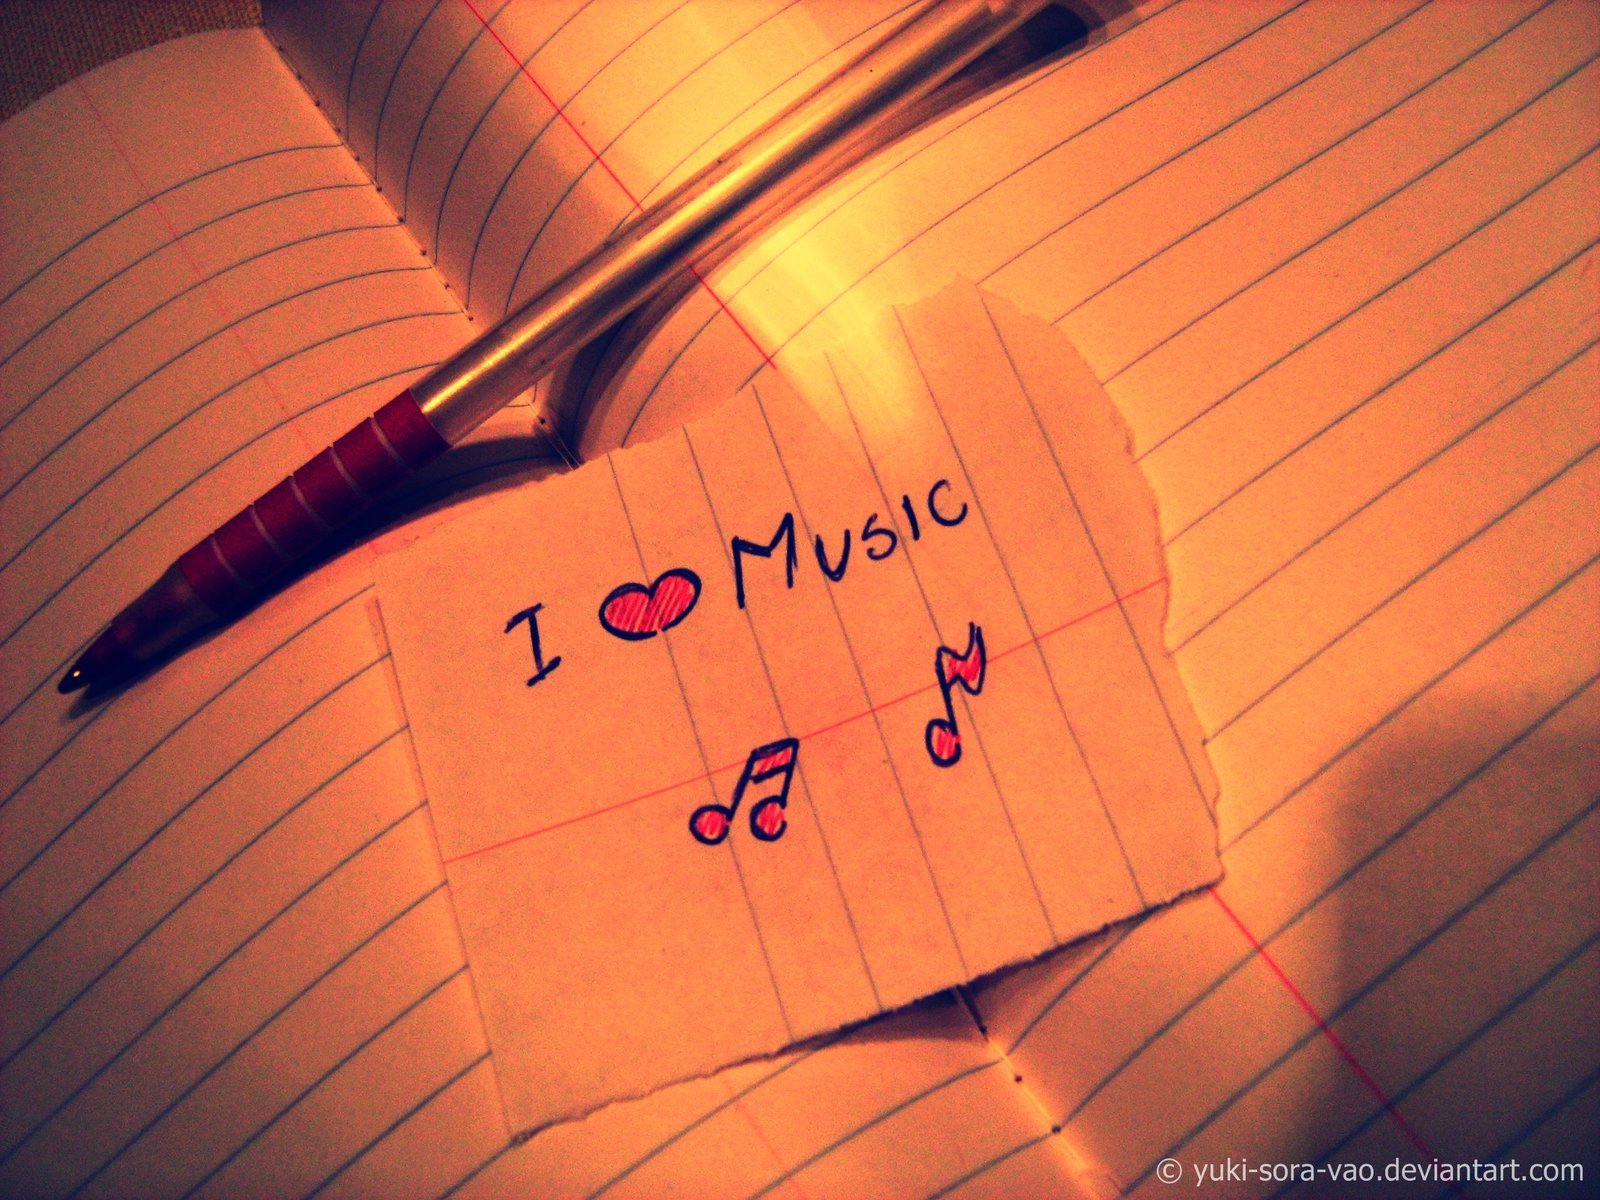 Красивая музыка люблю люблю люблю. Музыка картинки. Музыка надпись. Обложка с надписью я люблю музыку. Я люблю музыку картинки.